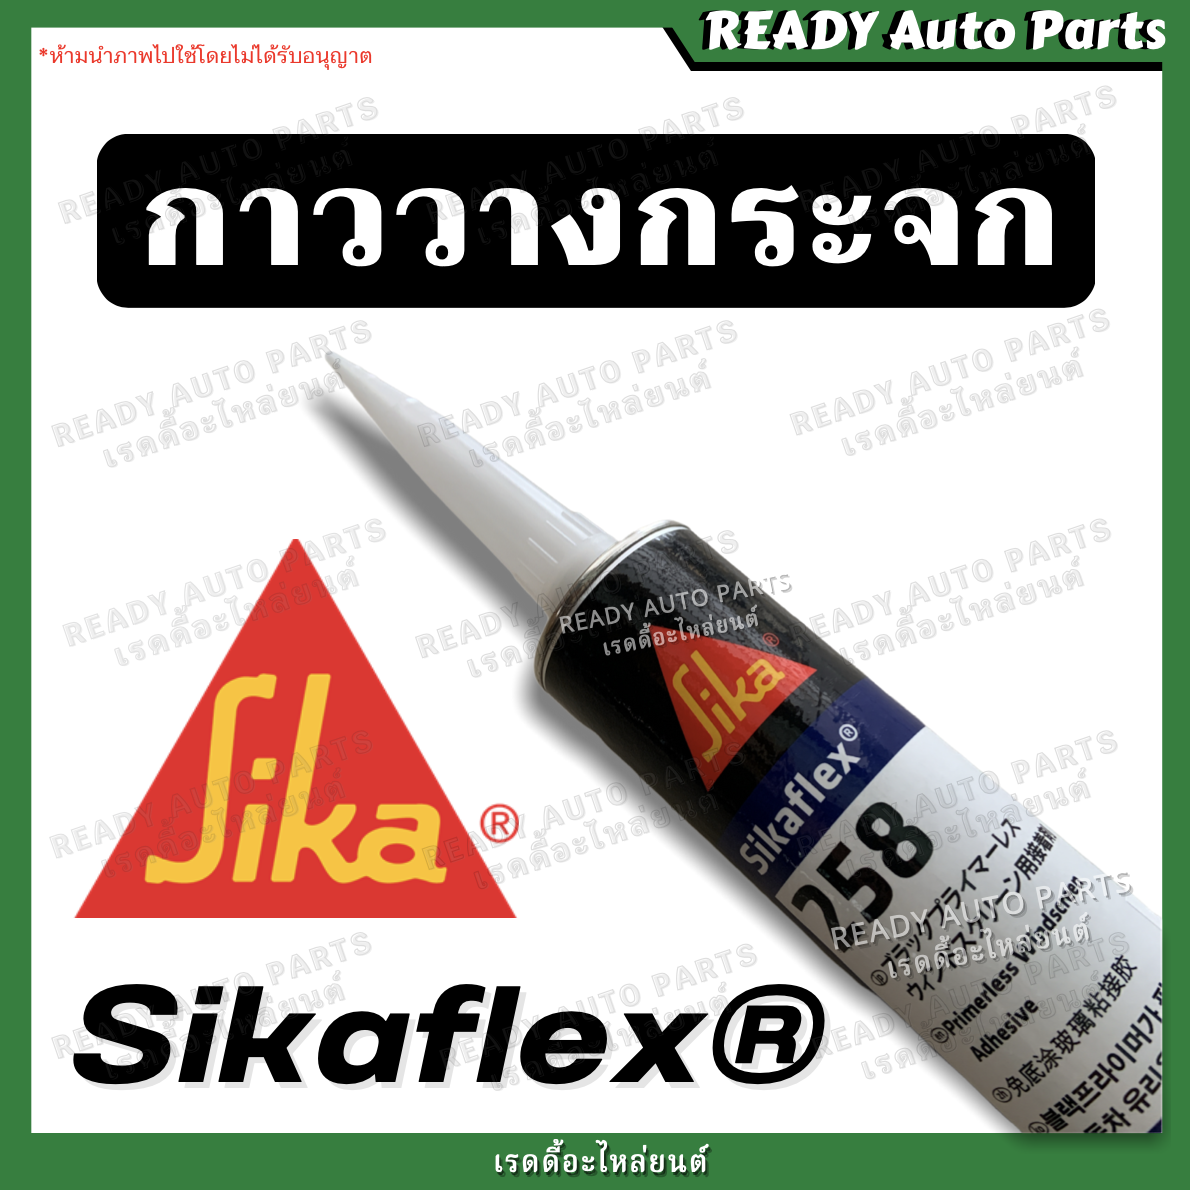 คำอธิบายเพิ่มเติมเกี่ยวกับ กาวติดกระจกรถยนต์ ซิก้าเฟล็กซ์ กาววางกระจก กาวโพลียูรีเทนประสิทธิภาพสูงจาก SIKA สำหรับติดกระจกรถยนต์ SIKAFLEX 258 กาววางกระจกรถยนต์ กาวซ่อมกระจกรถยนต์ กาวติดกระจกรถ กาวติดกระจกหน้ารถ กาวติดกระจกหลังรถ